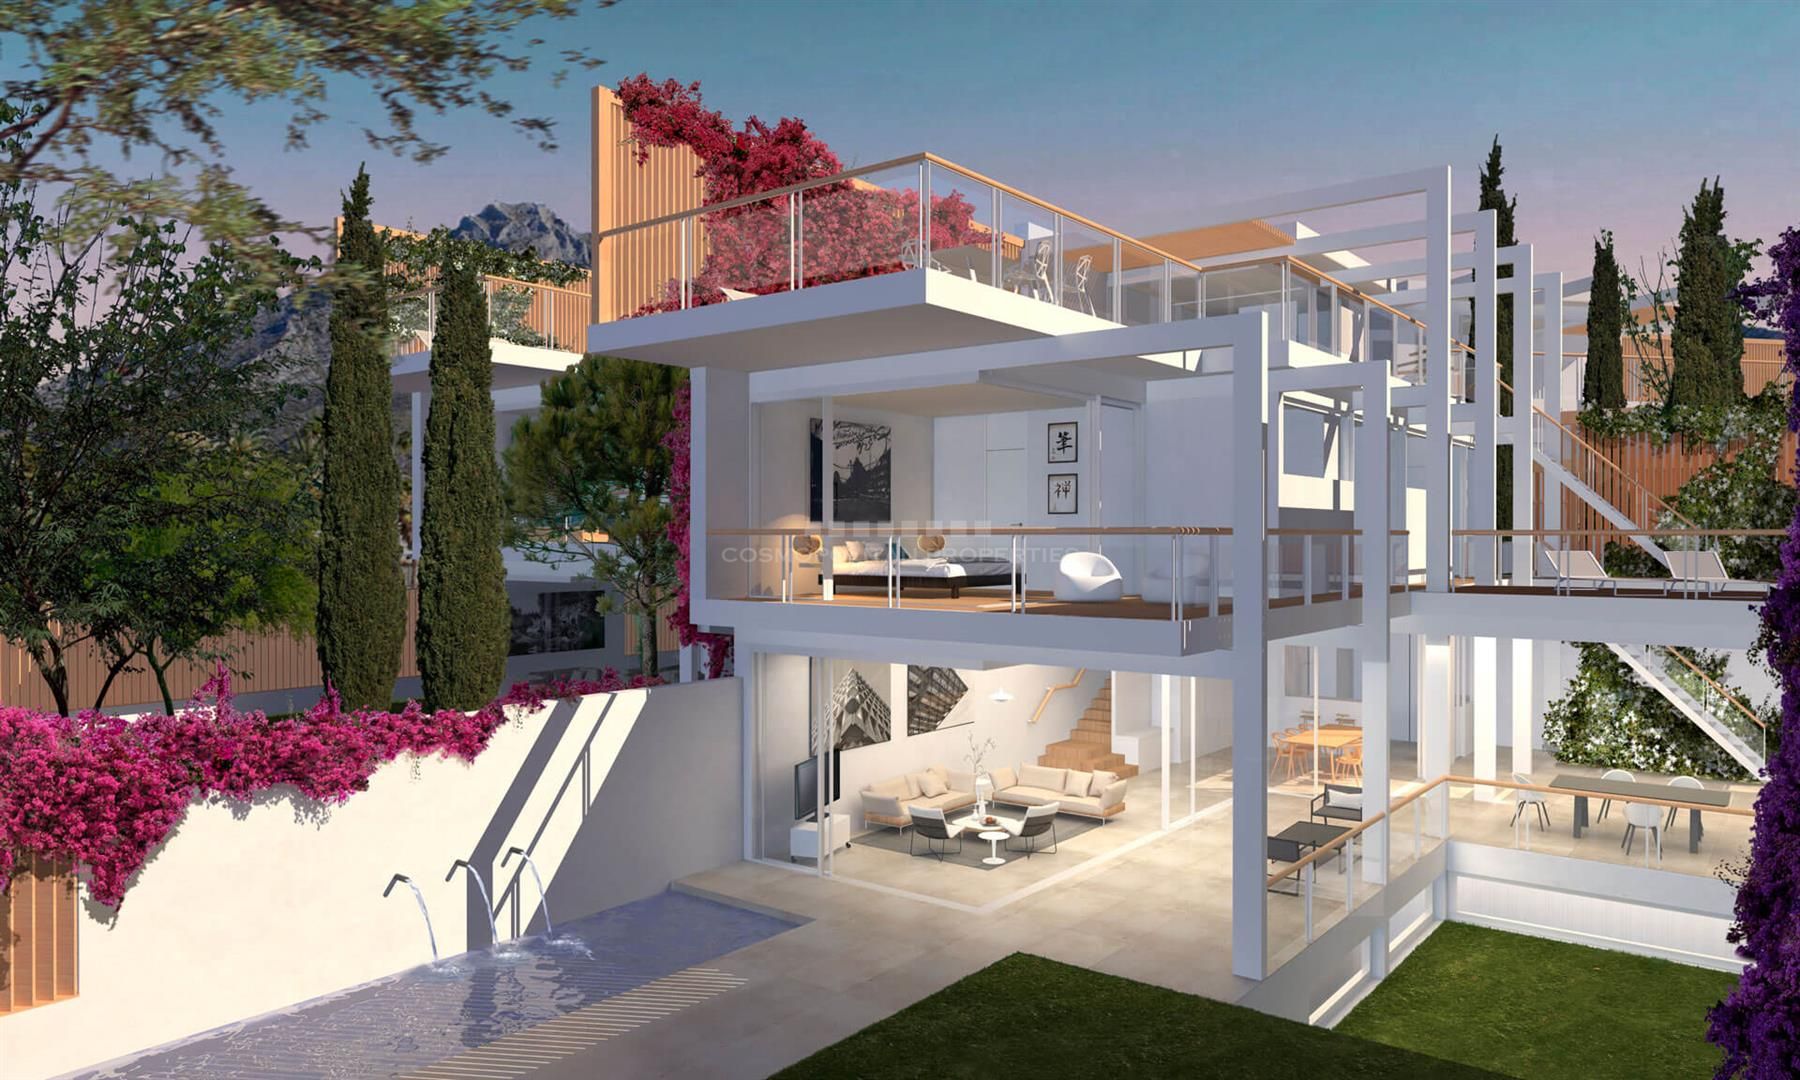 Bienvenidos a Jazmines 14, un conjunto de 8 villas independientes en Marbella con un diseño innovador.